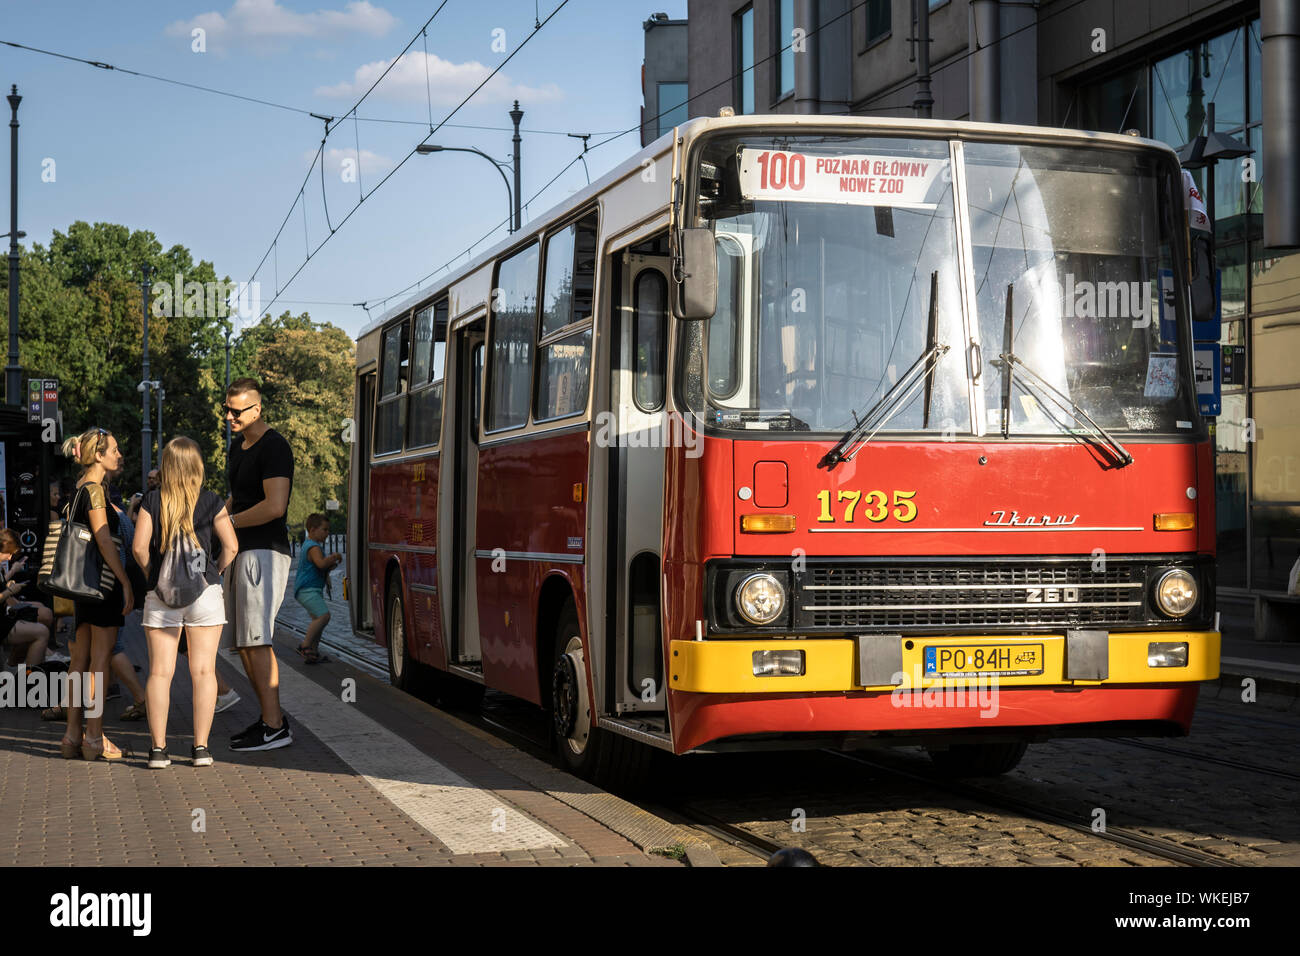 Poznan, Polonia - 31 agosto 2019: Hop on hop off linea turistica autobus d'epoca nel centro della citta'. Foto Stock